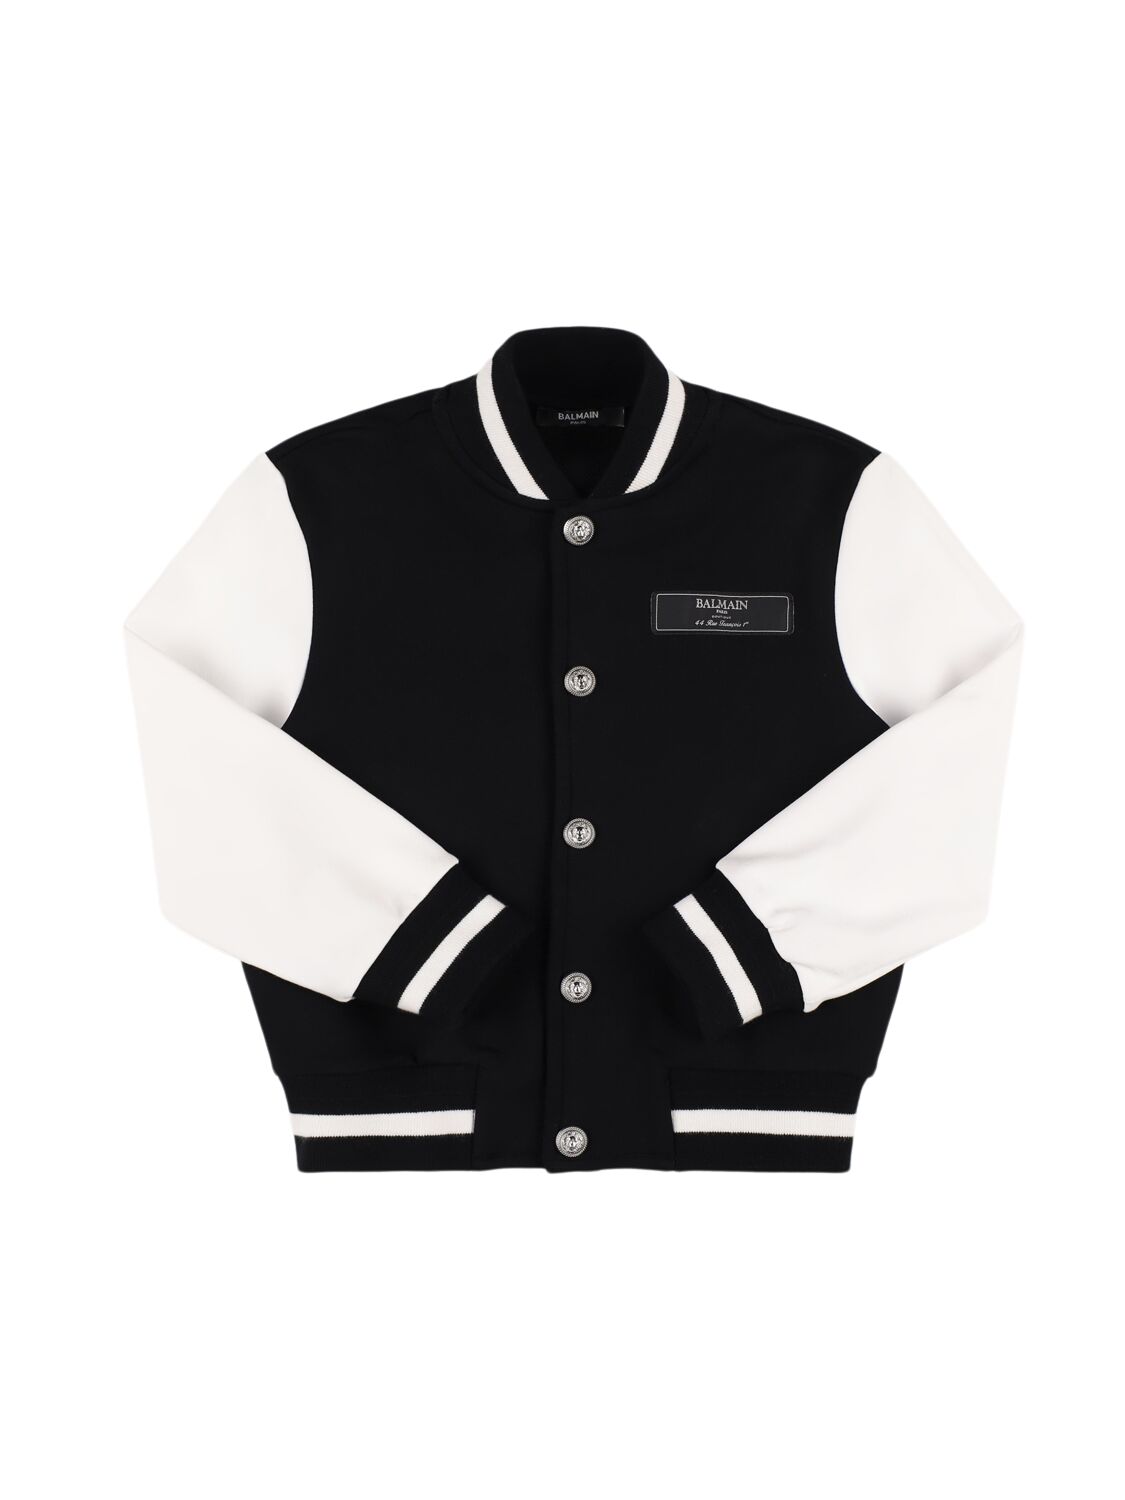 Balmain Cotton Bomber Jacket In Black/white